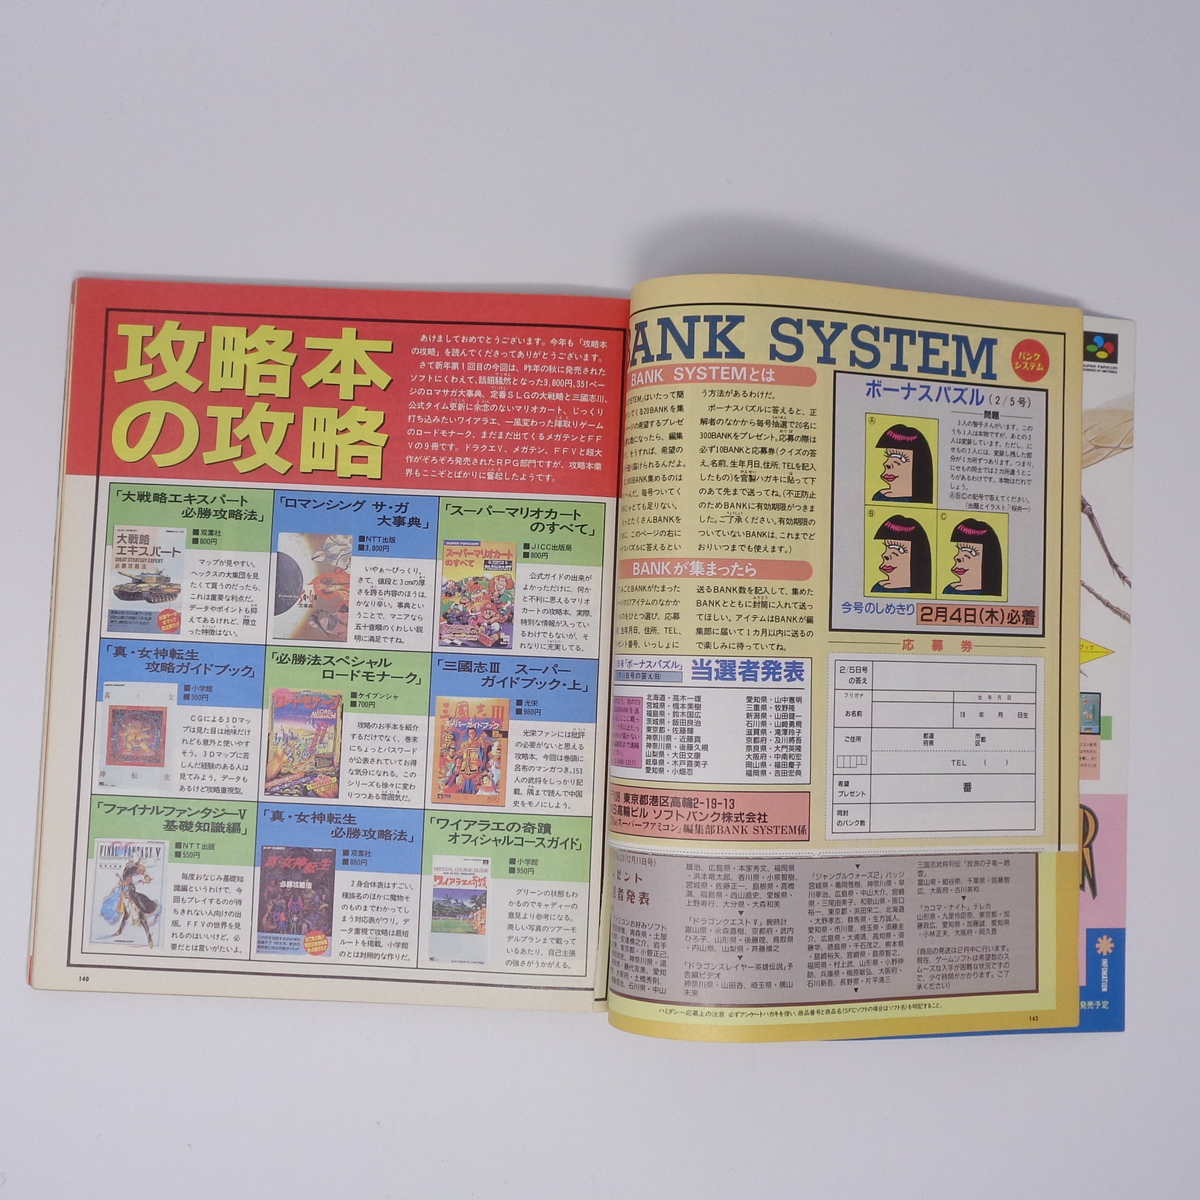 【応募券切り取りあり】The SuperFamicom 1993年2月5日号 NO.2 別冊付録無し /Theスーパーファミコン/ゲーム雑誌[Free Shipping]_画像7